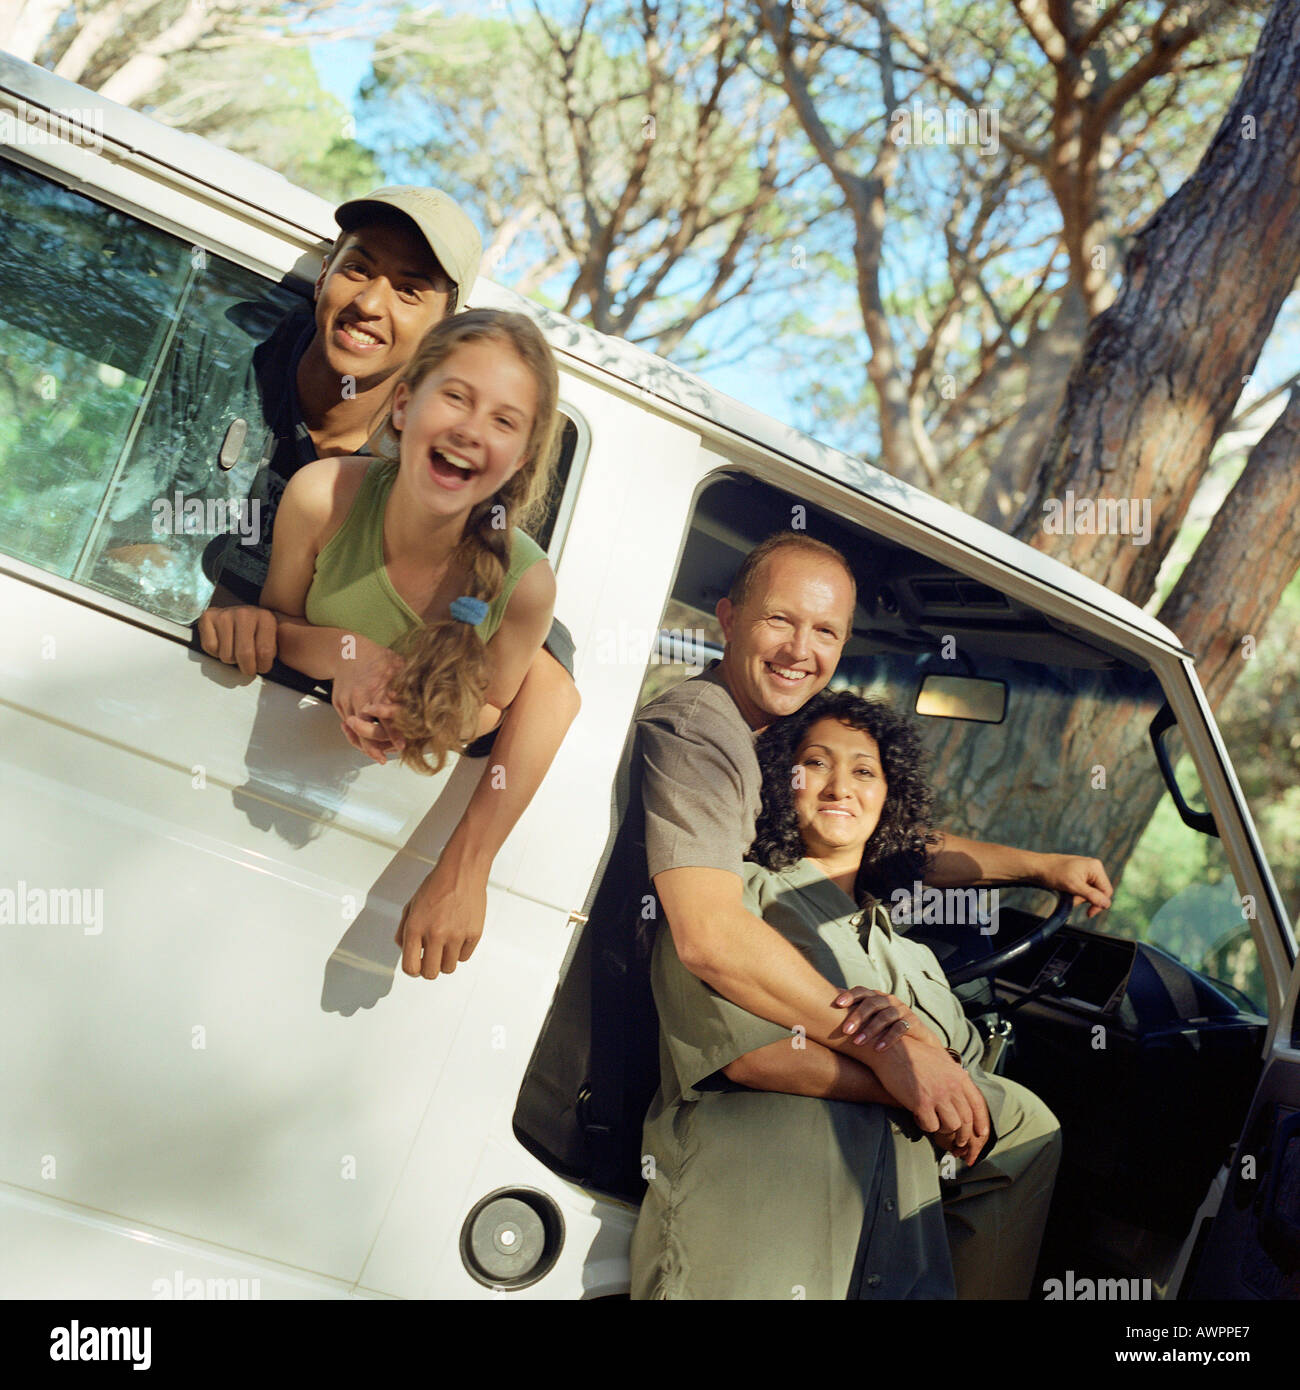 Family portrait, children sticking heads out of van window, parents in open door of van Stock Photo